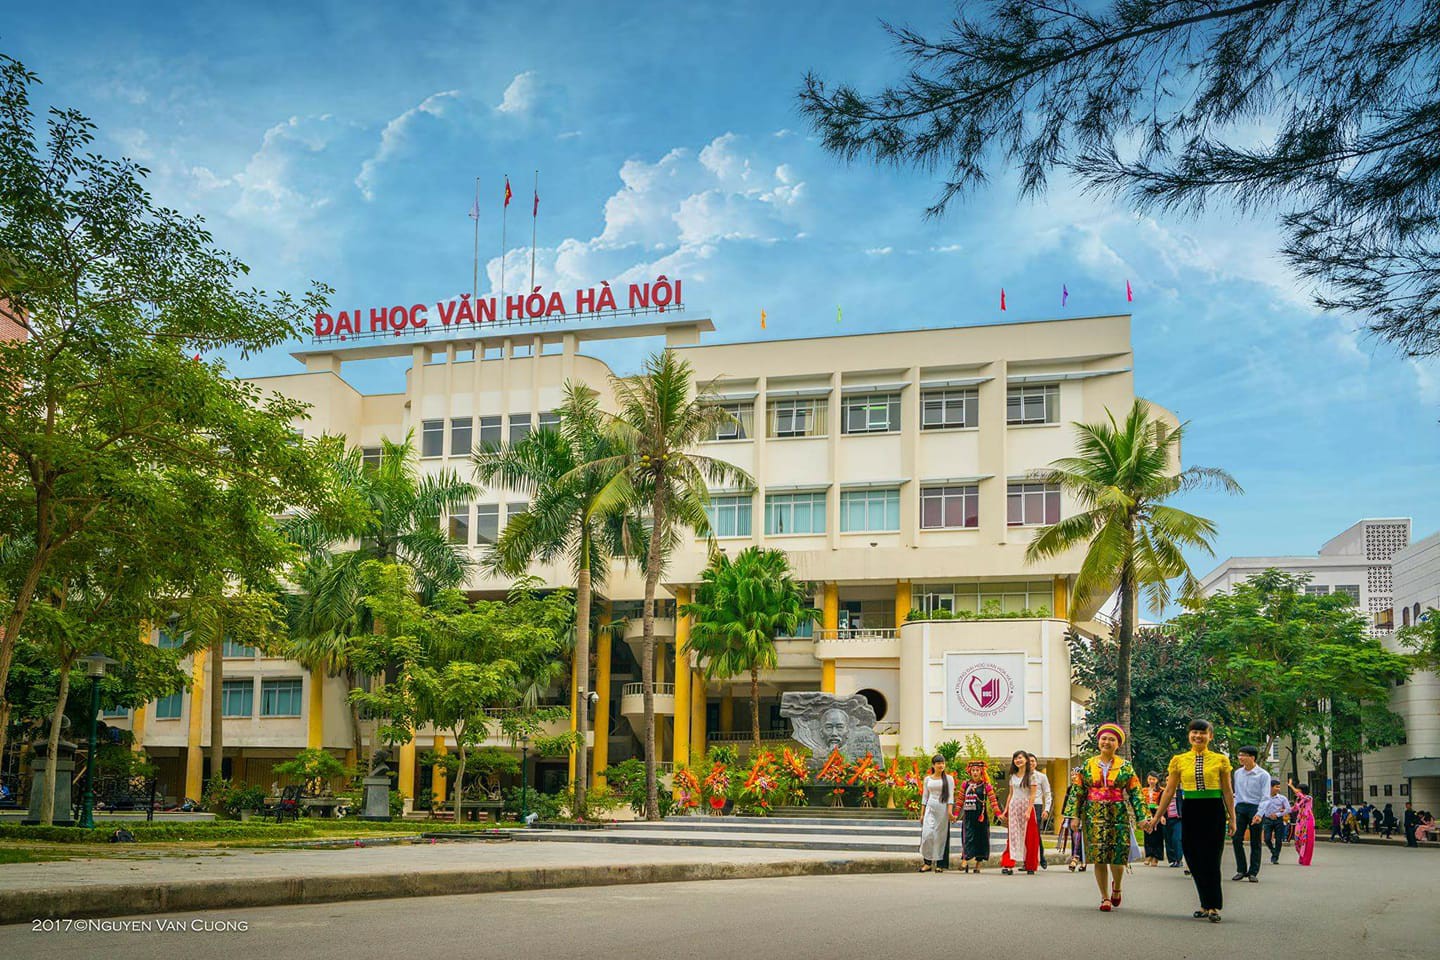 Điểm chuẩn Trường Đại học Văn hóa Hà Nội